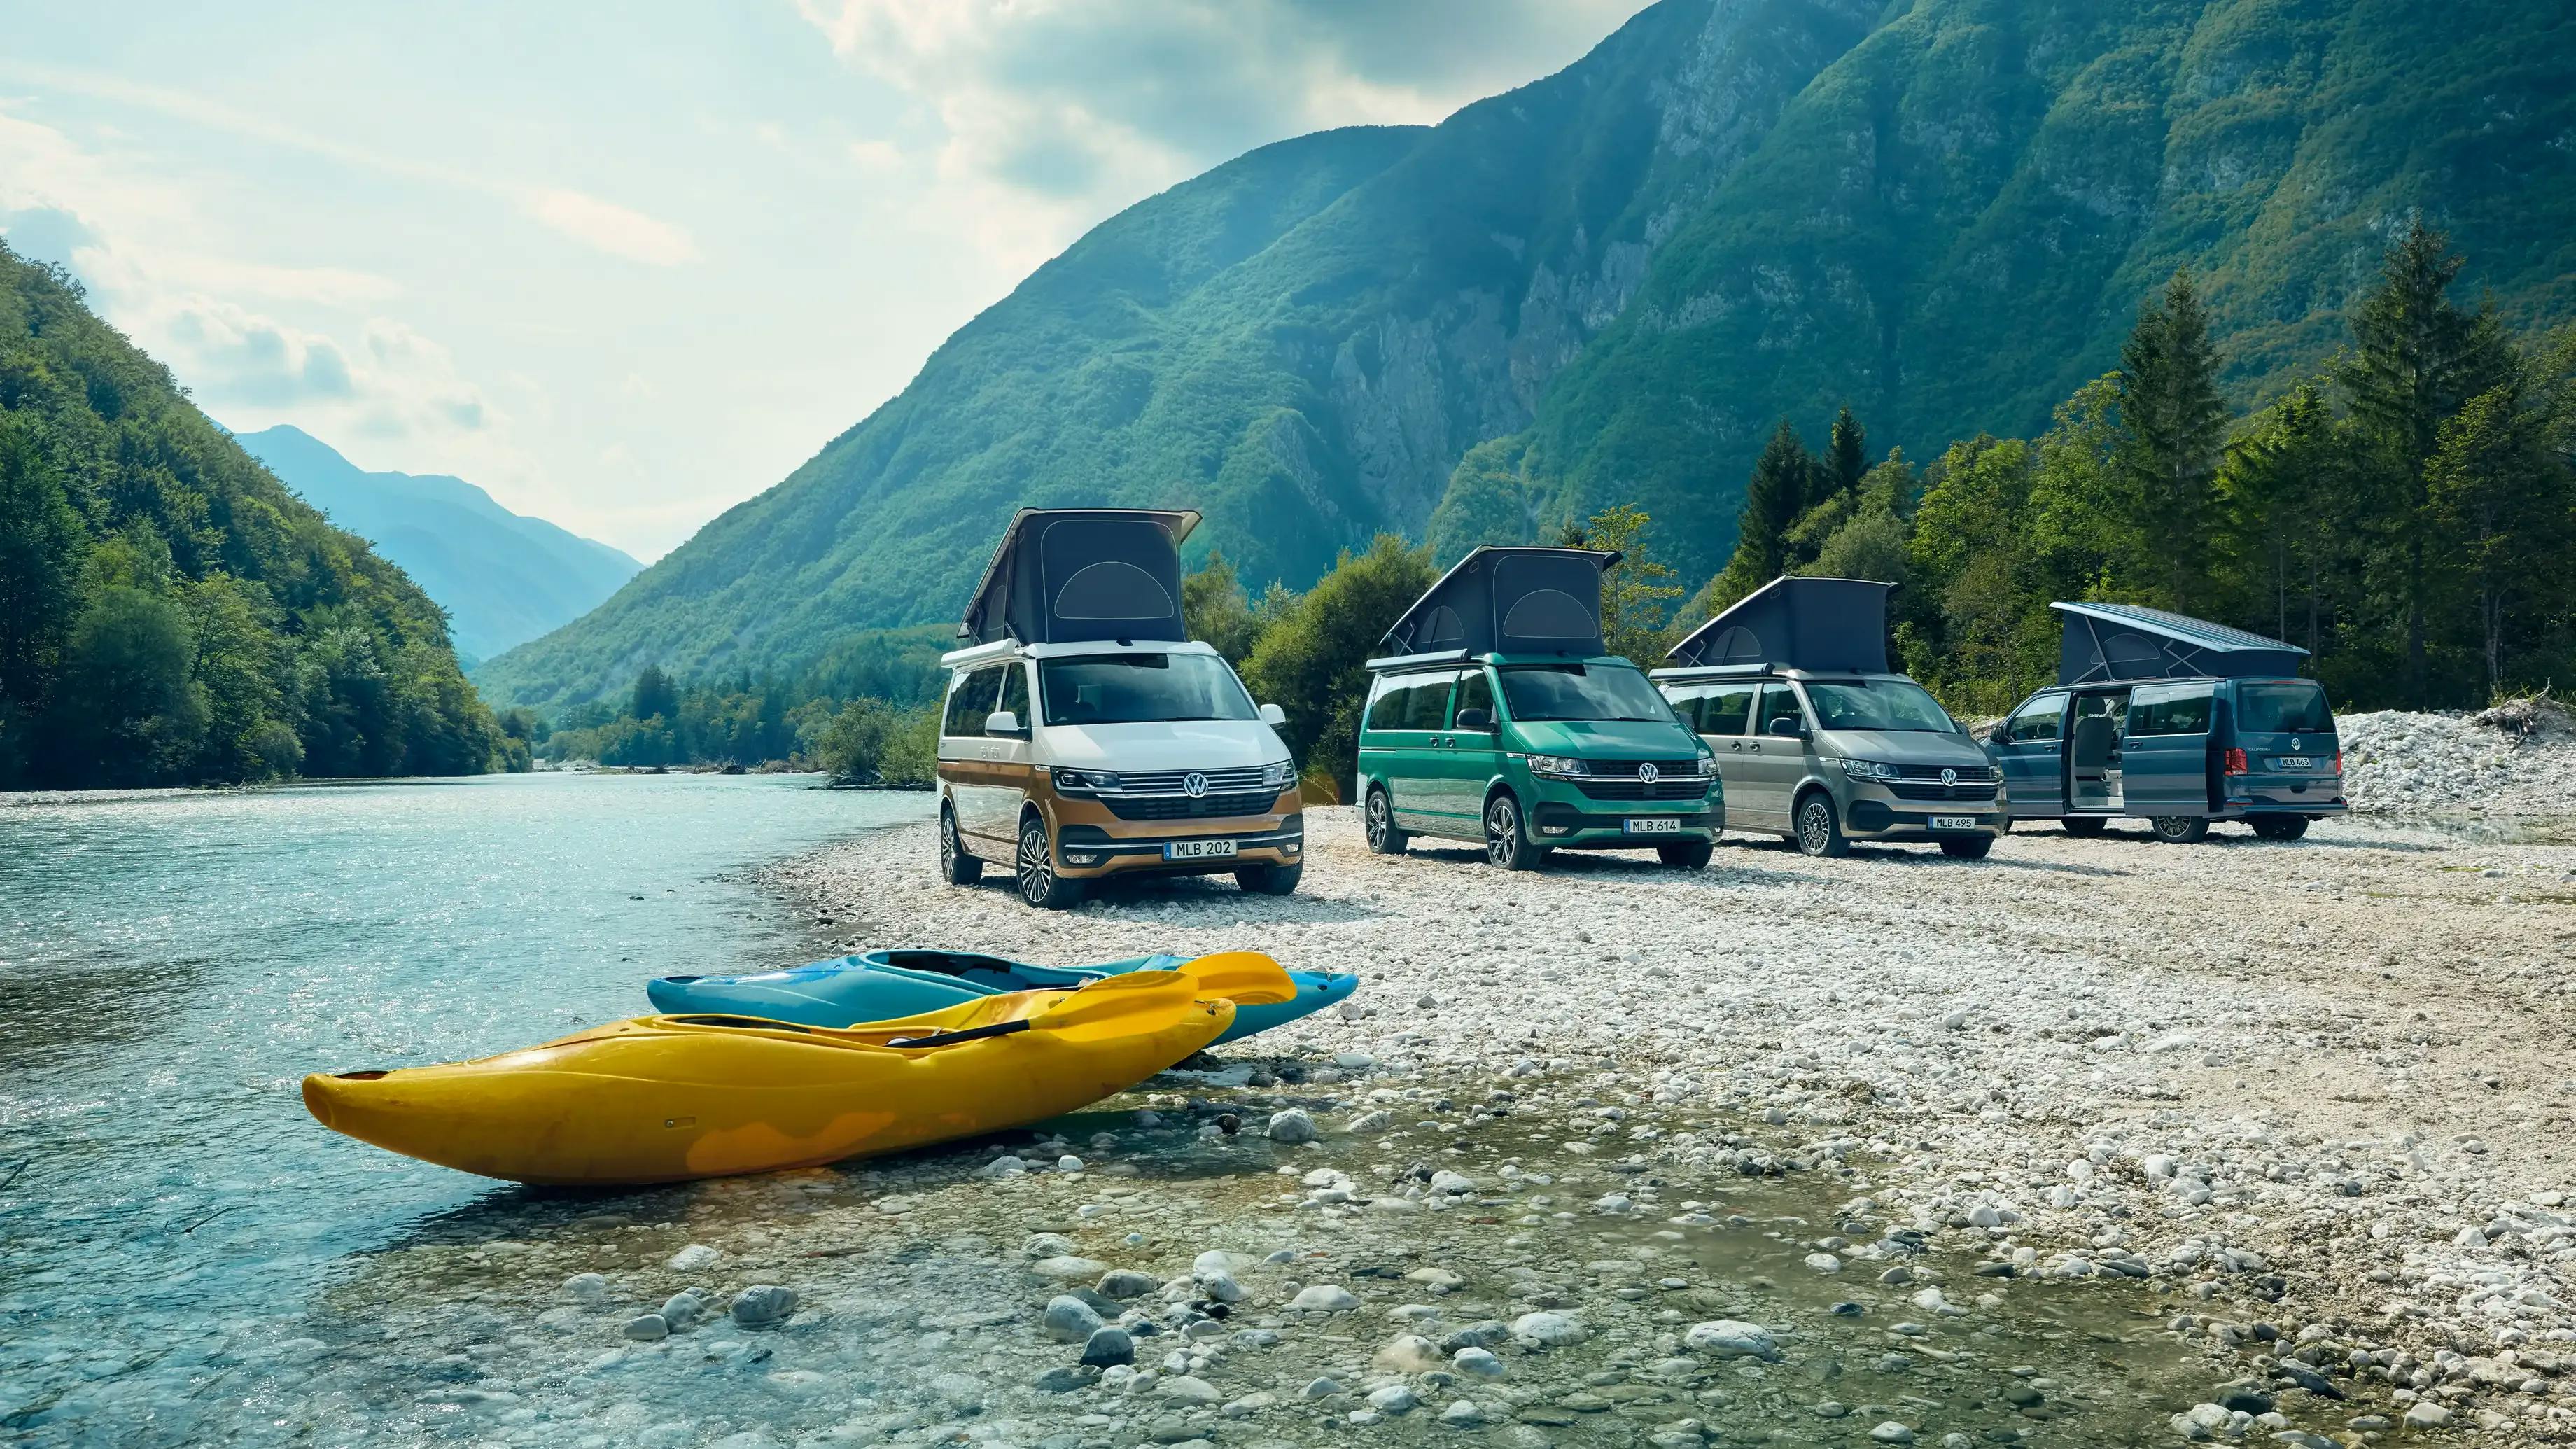 Det finns appar som hjälper dig att hitta natursköna ställplatser och bekväma campingplatser längs din rutt. Husbilarna på bilden är av modellen Californina från Volkswagen.